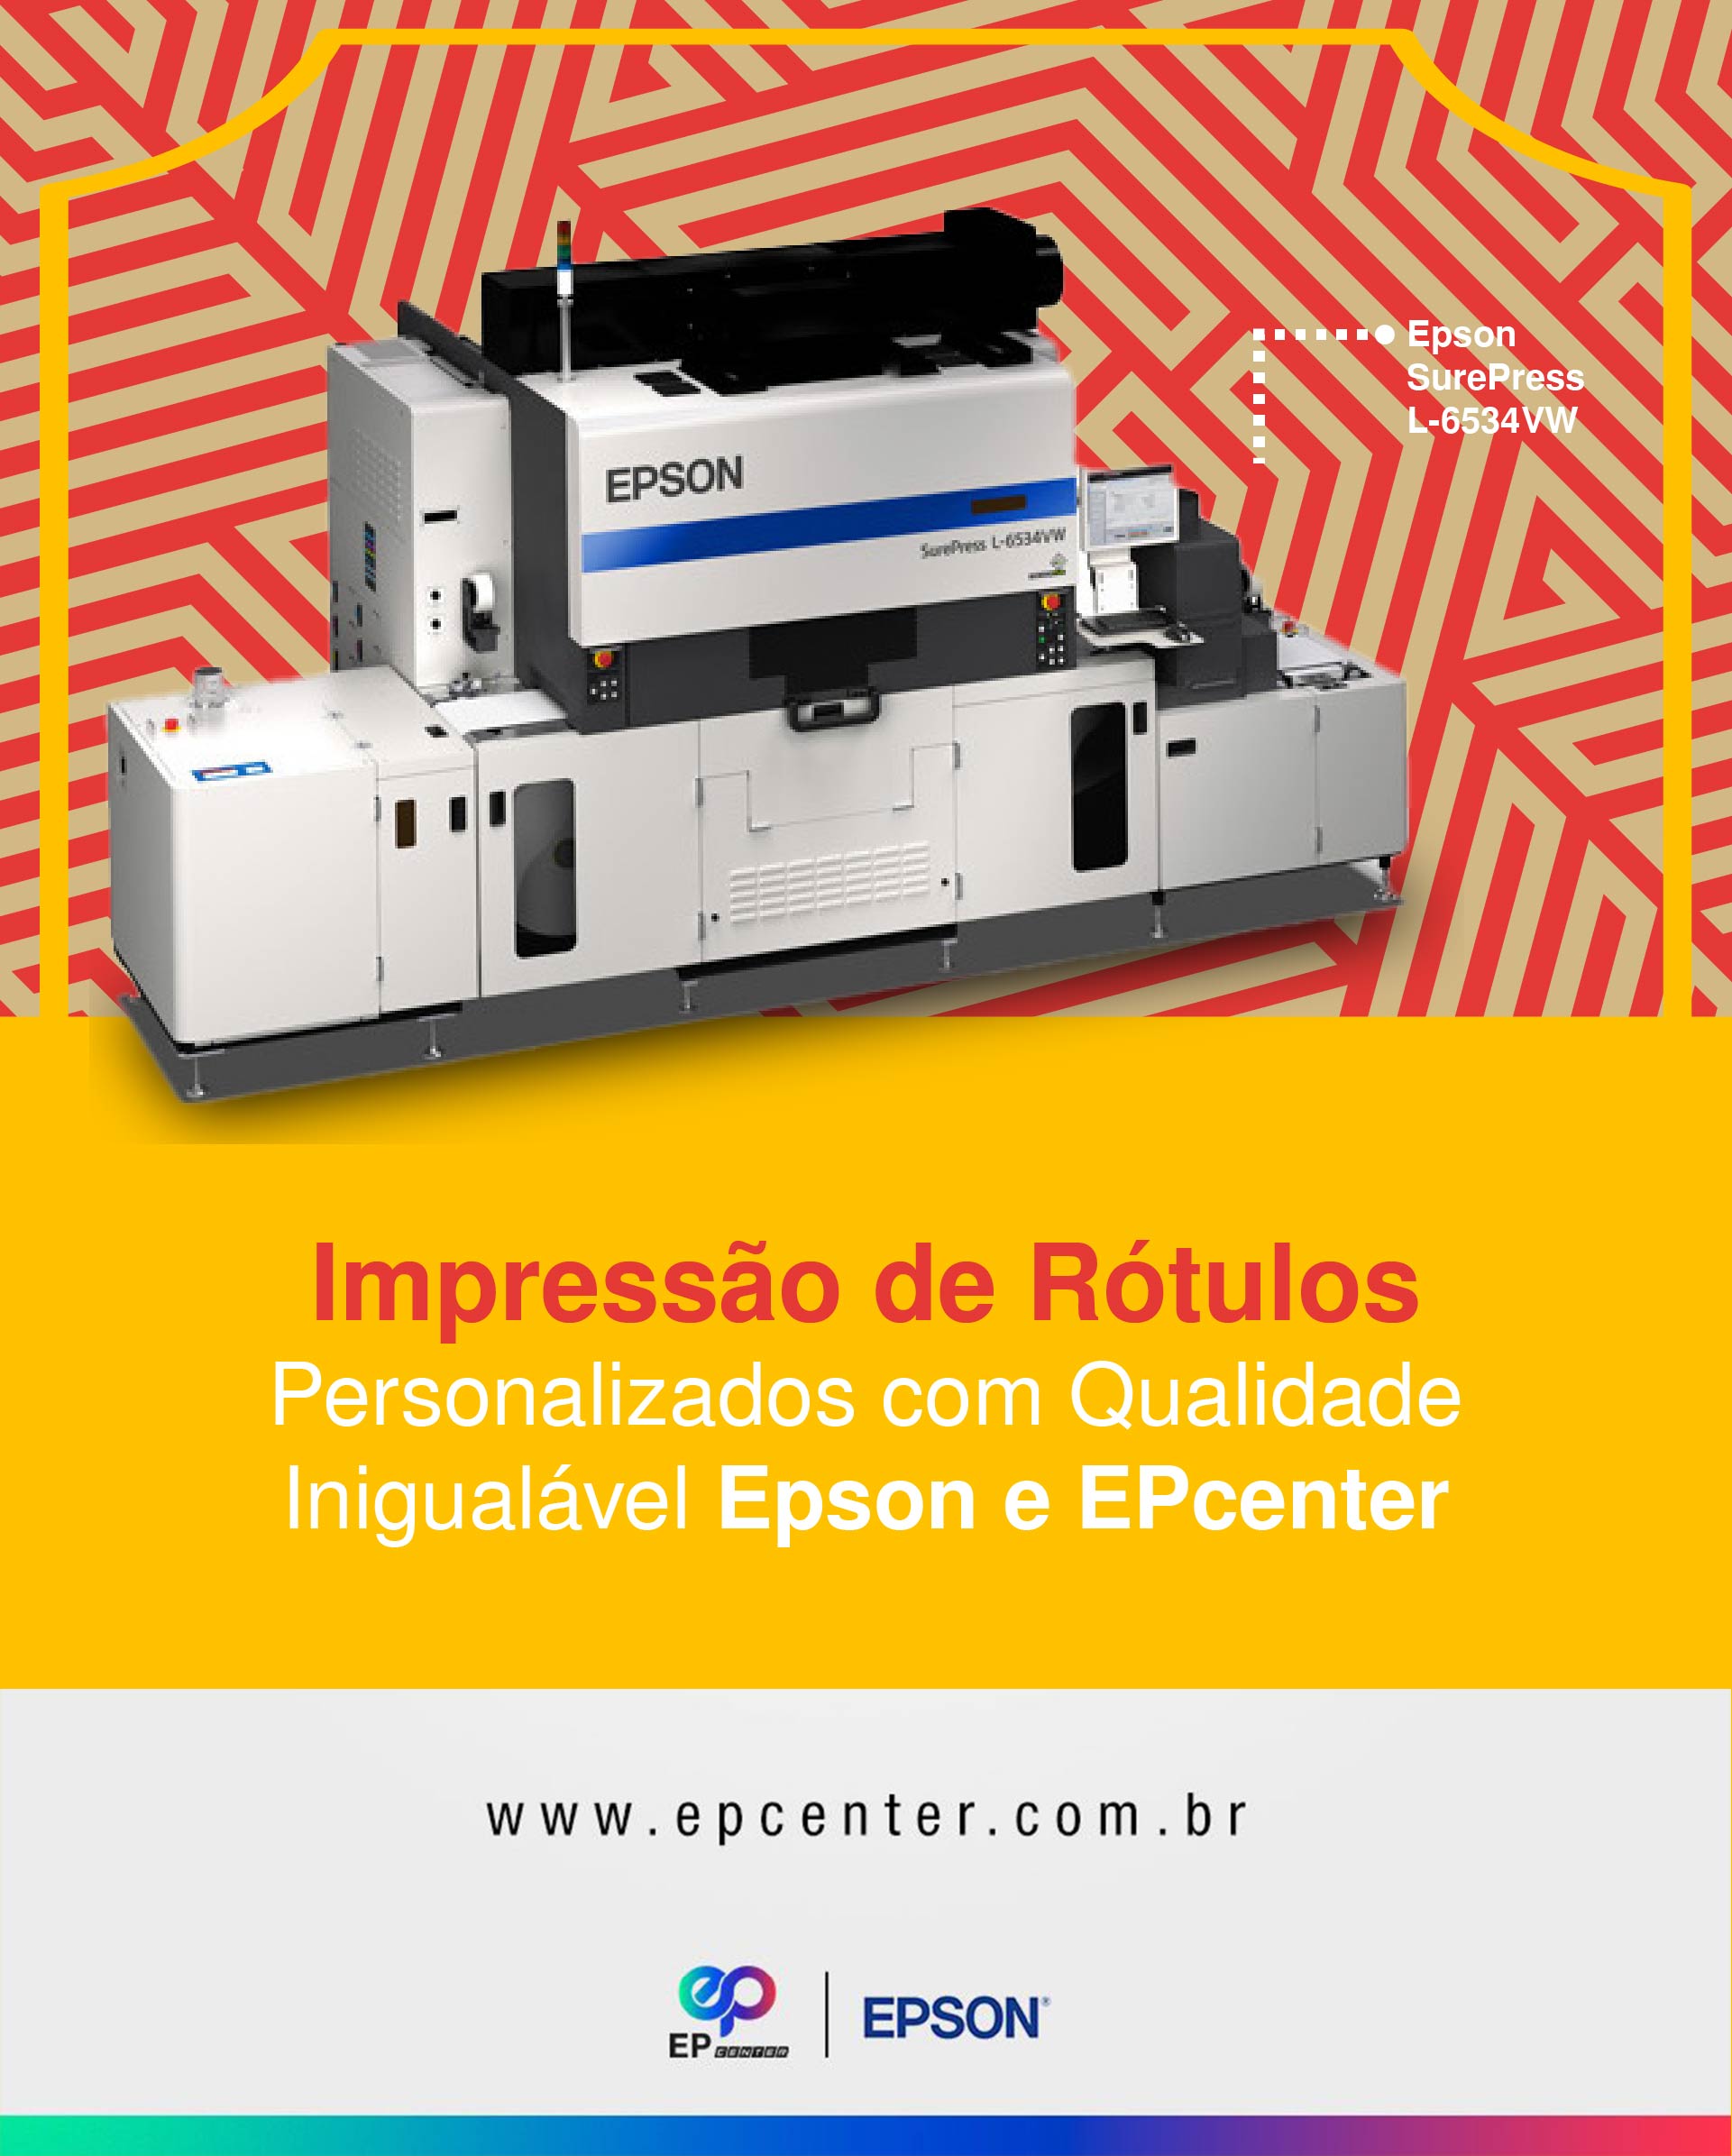 Impressão de Rótulos Personalizados com Qualidade Inigualável Epson e EPcenter